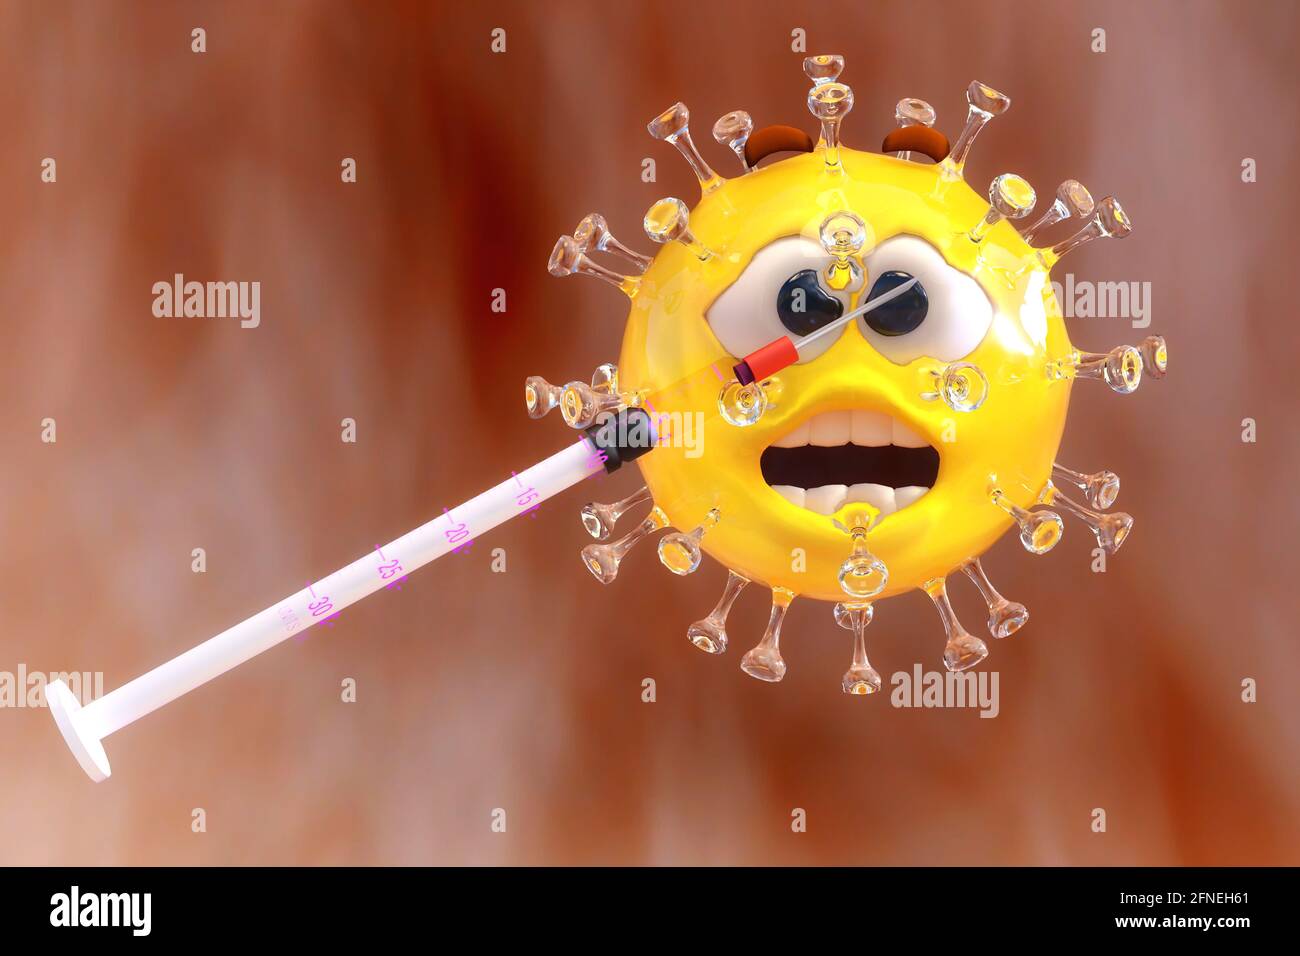 Künstlerische 3D-Darstellung des Coronavirus sars-cov-2 Stockfoto